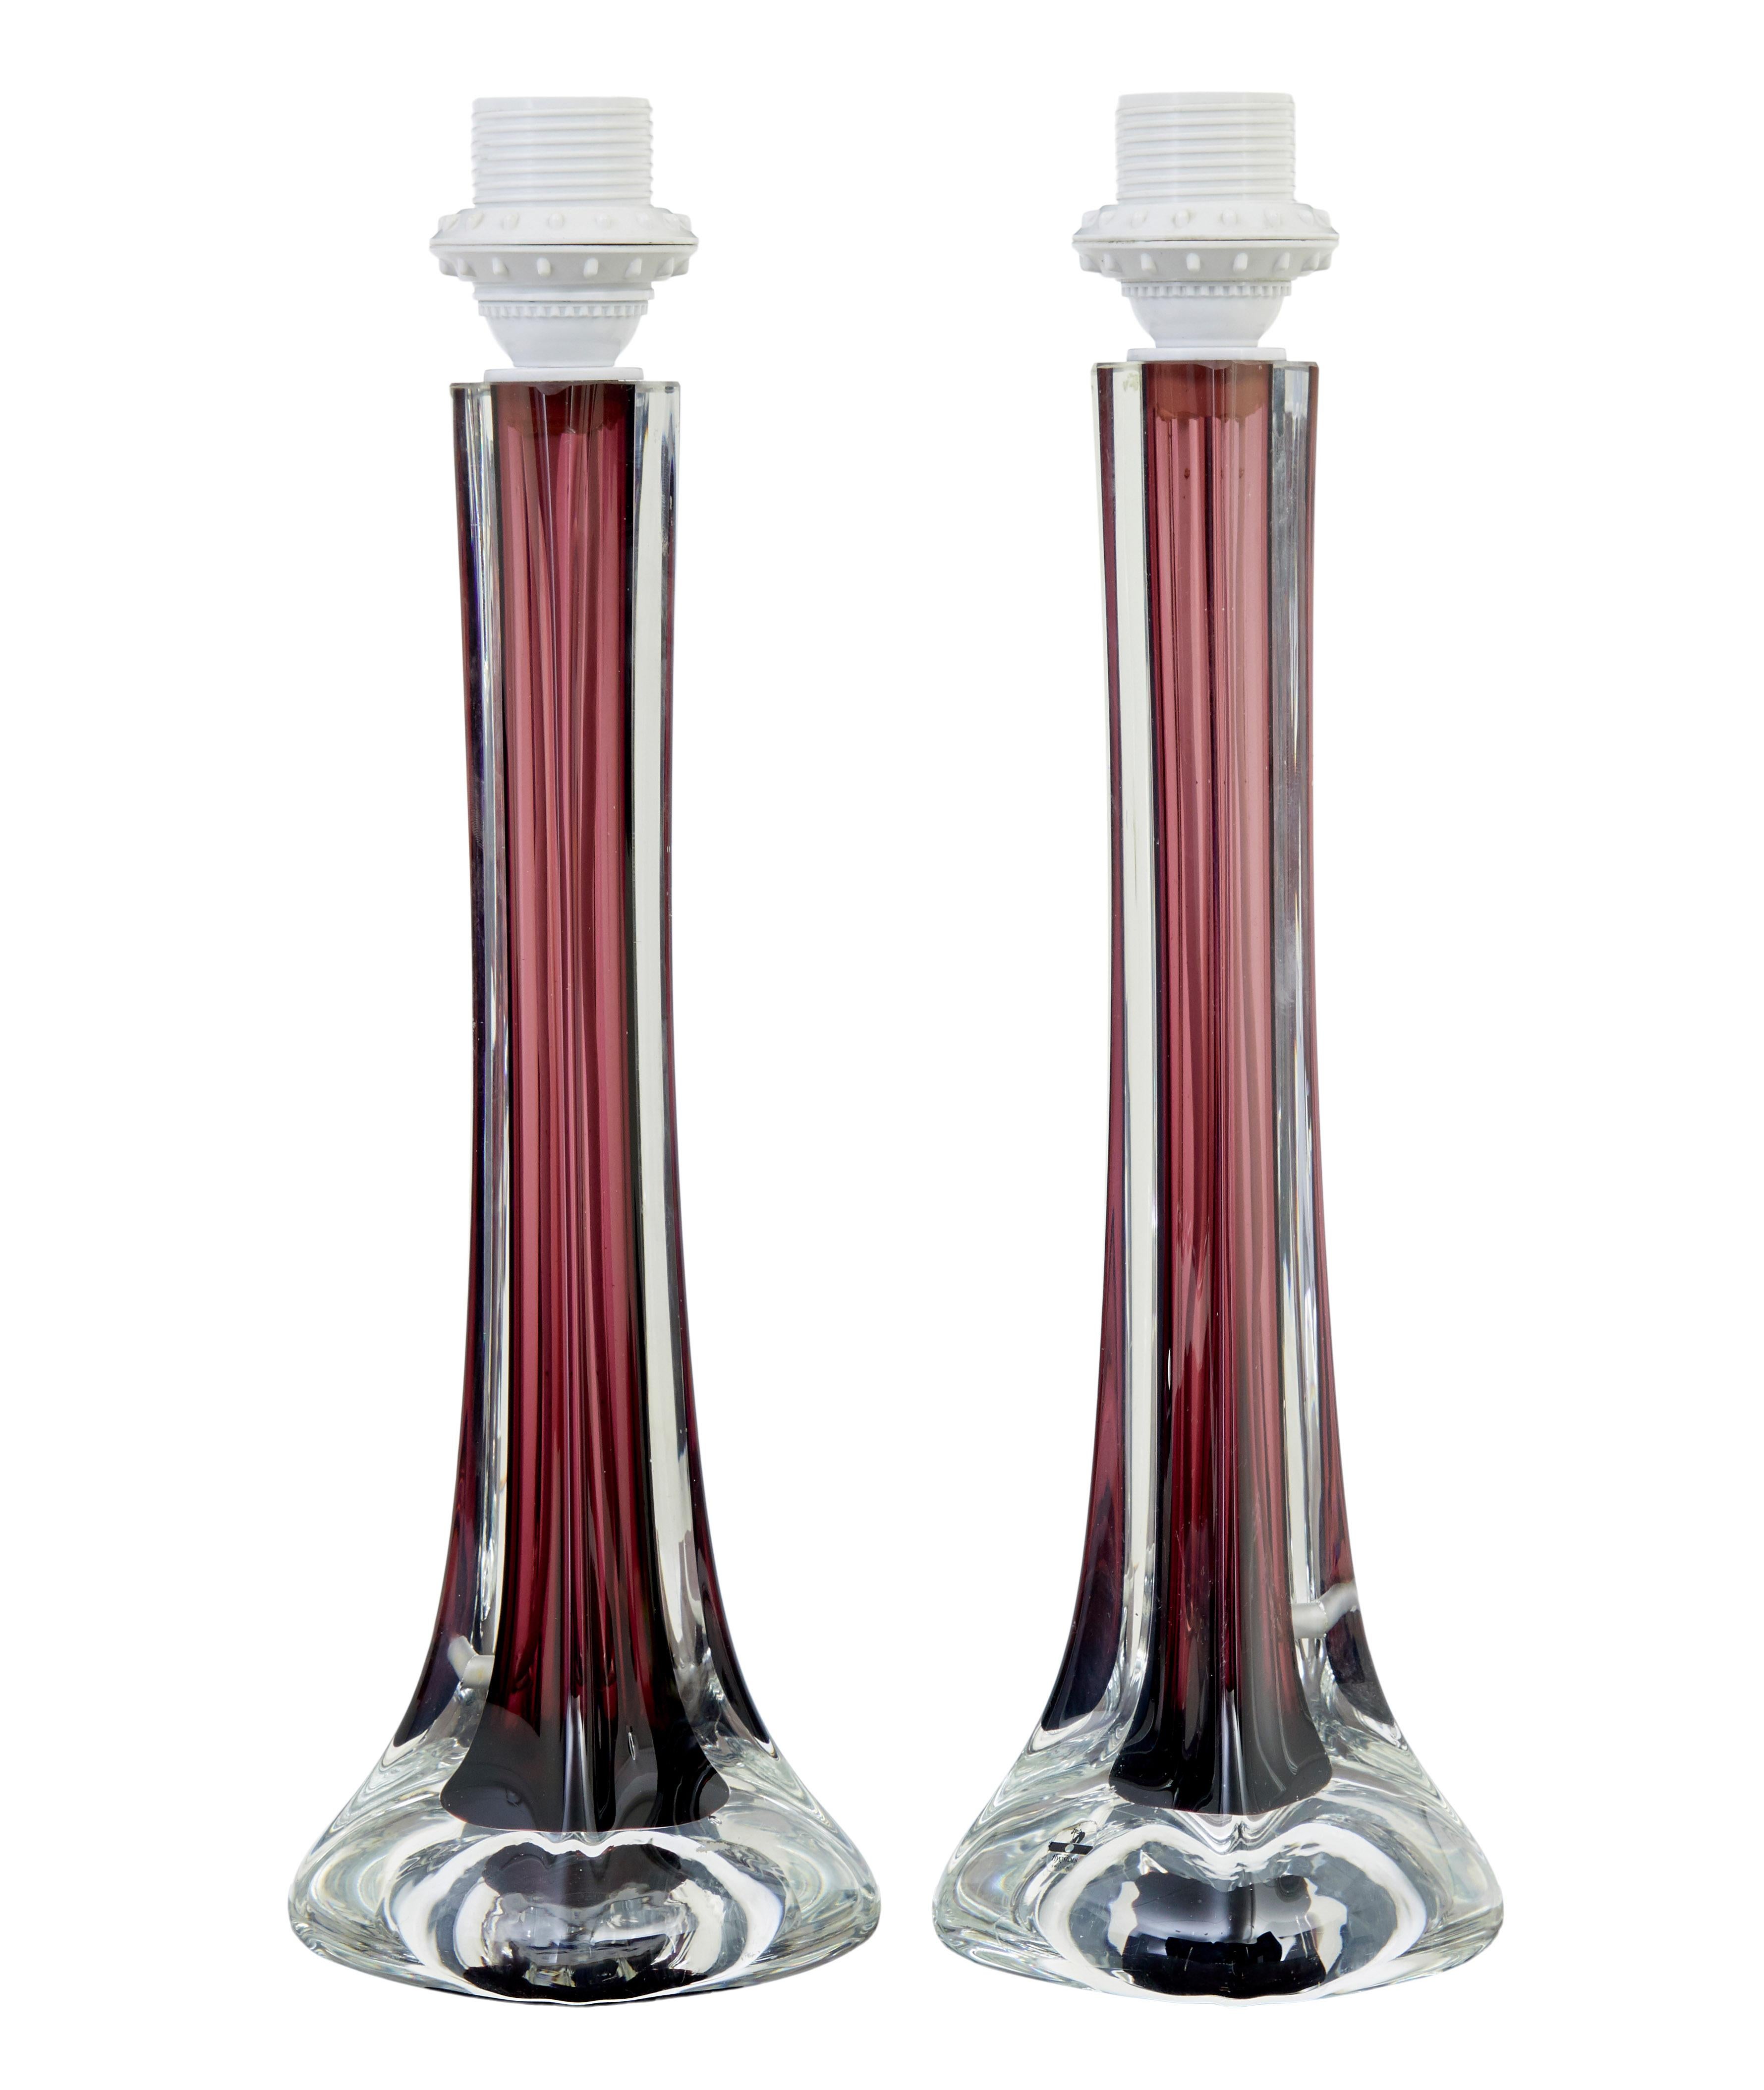 Paire de lampes de table en verre coloré du milieu du 20e siècle, fabriquées par Flygsfors en Suède, vers 1960.

Modèle bien connu conçu par Paul Kedelv, en forme de coquille avec une tige intérieure de couleur bordeaux, s'écoulant vers une base de